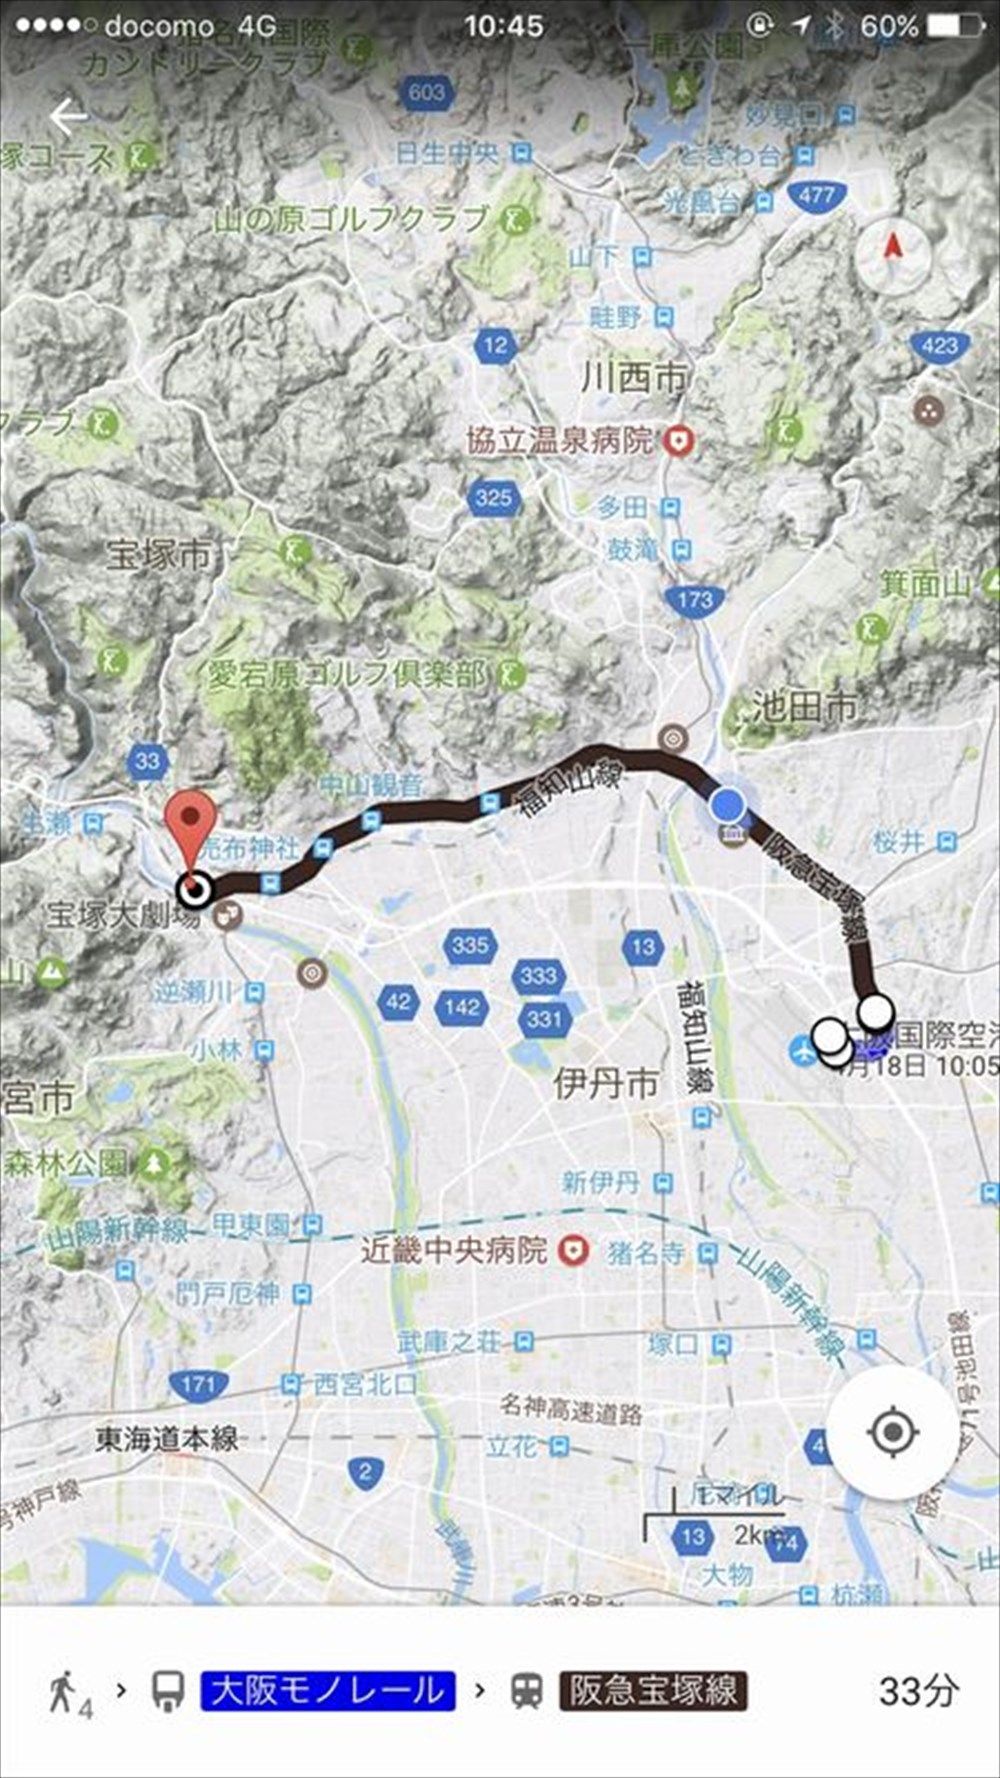 阪急宝塚線のルート